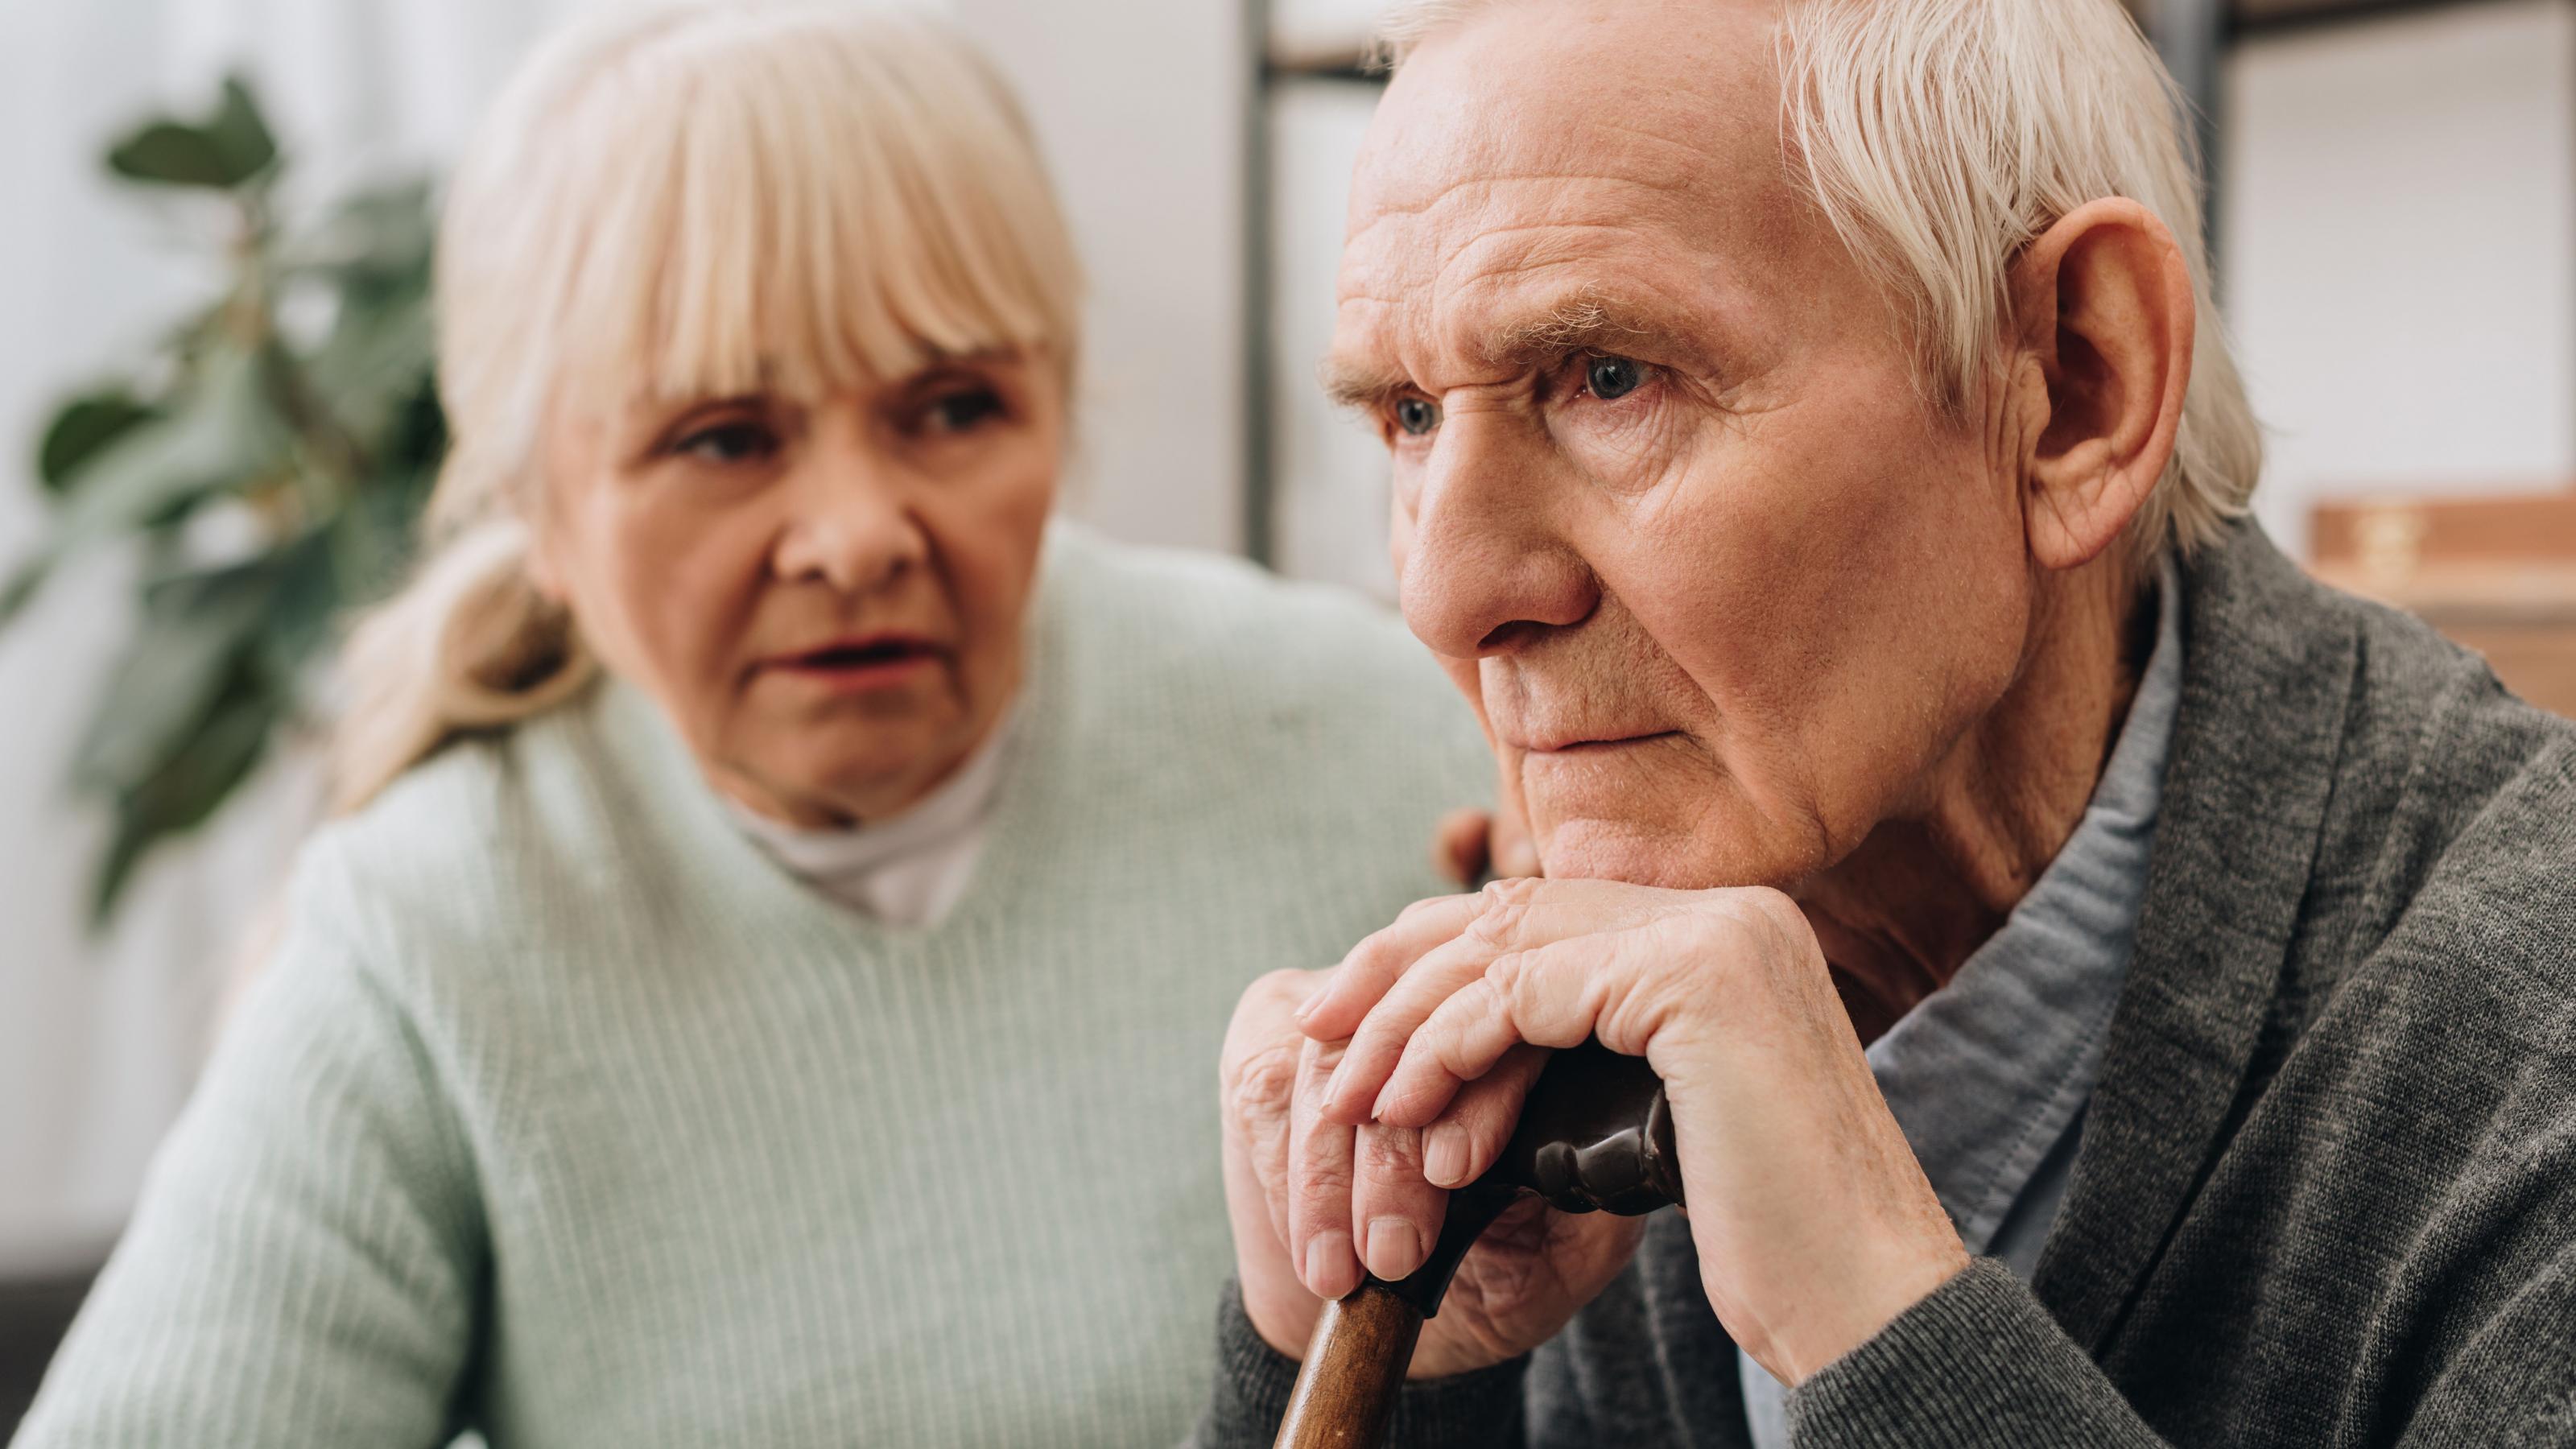 Eine Frau spricht zu einem alten Mann, der einen Gehstock umfasst hält und ernst geradeaus blickt. Vier von fünf pflegebedürftige Menschen werden zu Hause versorgt – oft von Angehörigen.